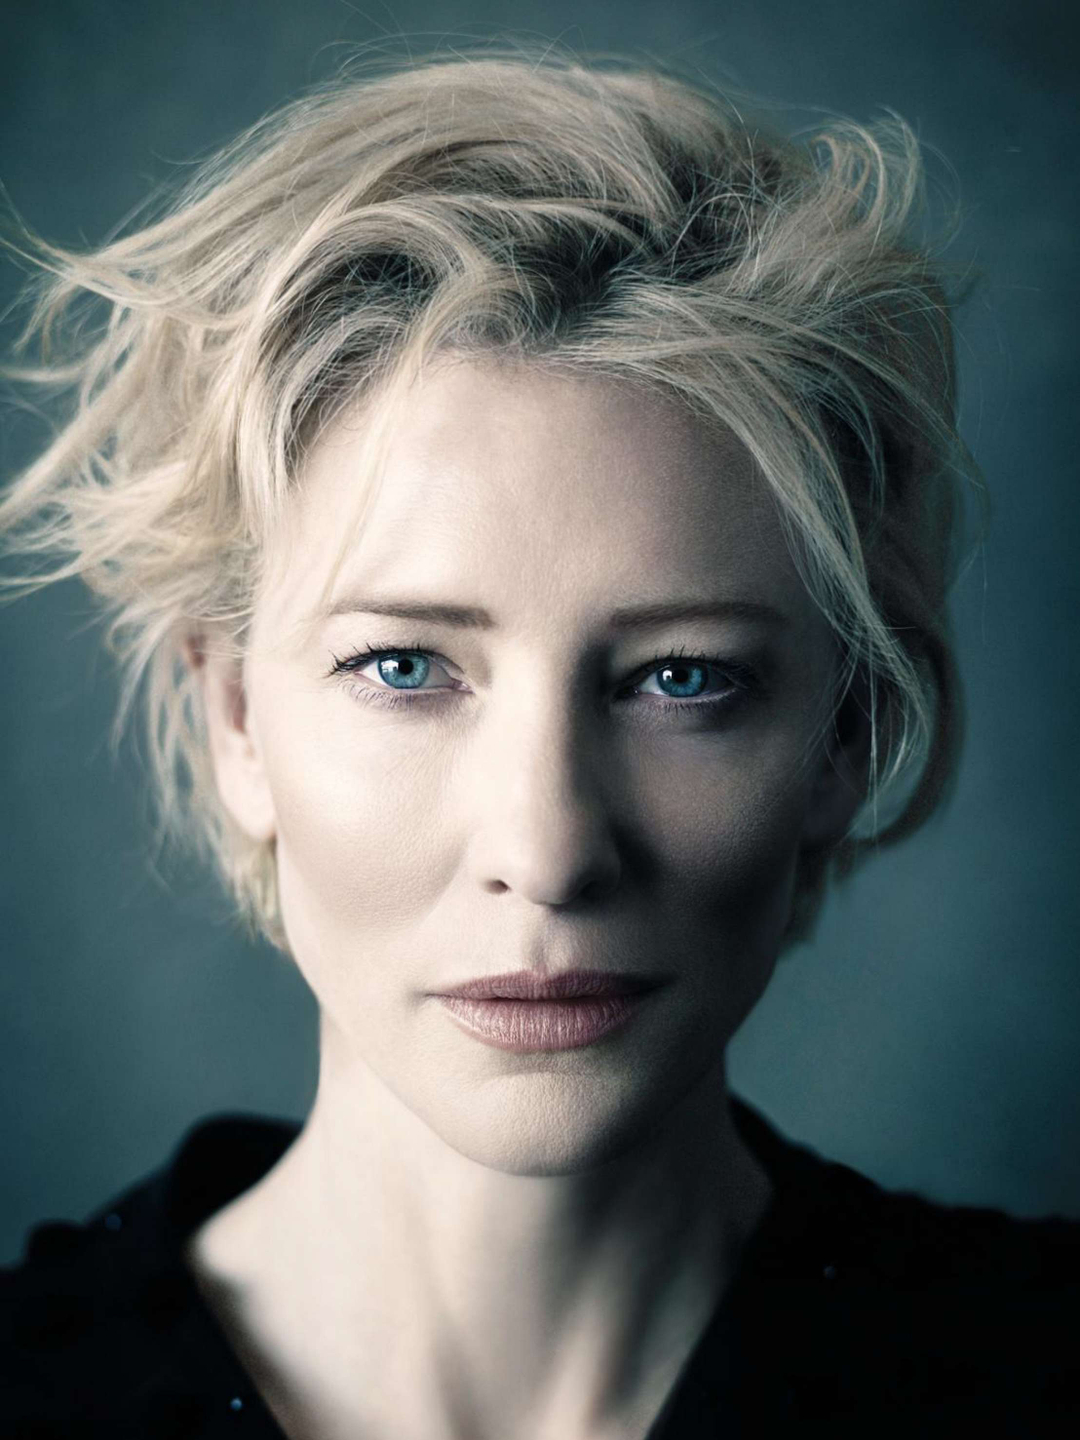 Cate Blanchett personal traits